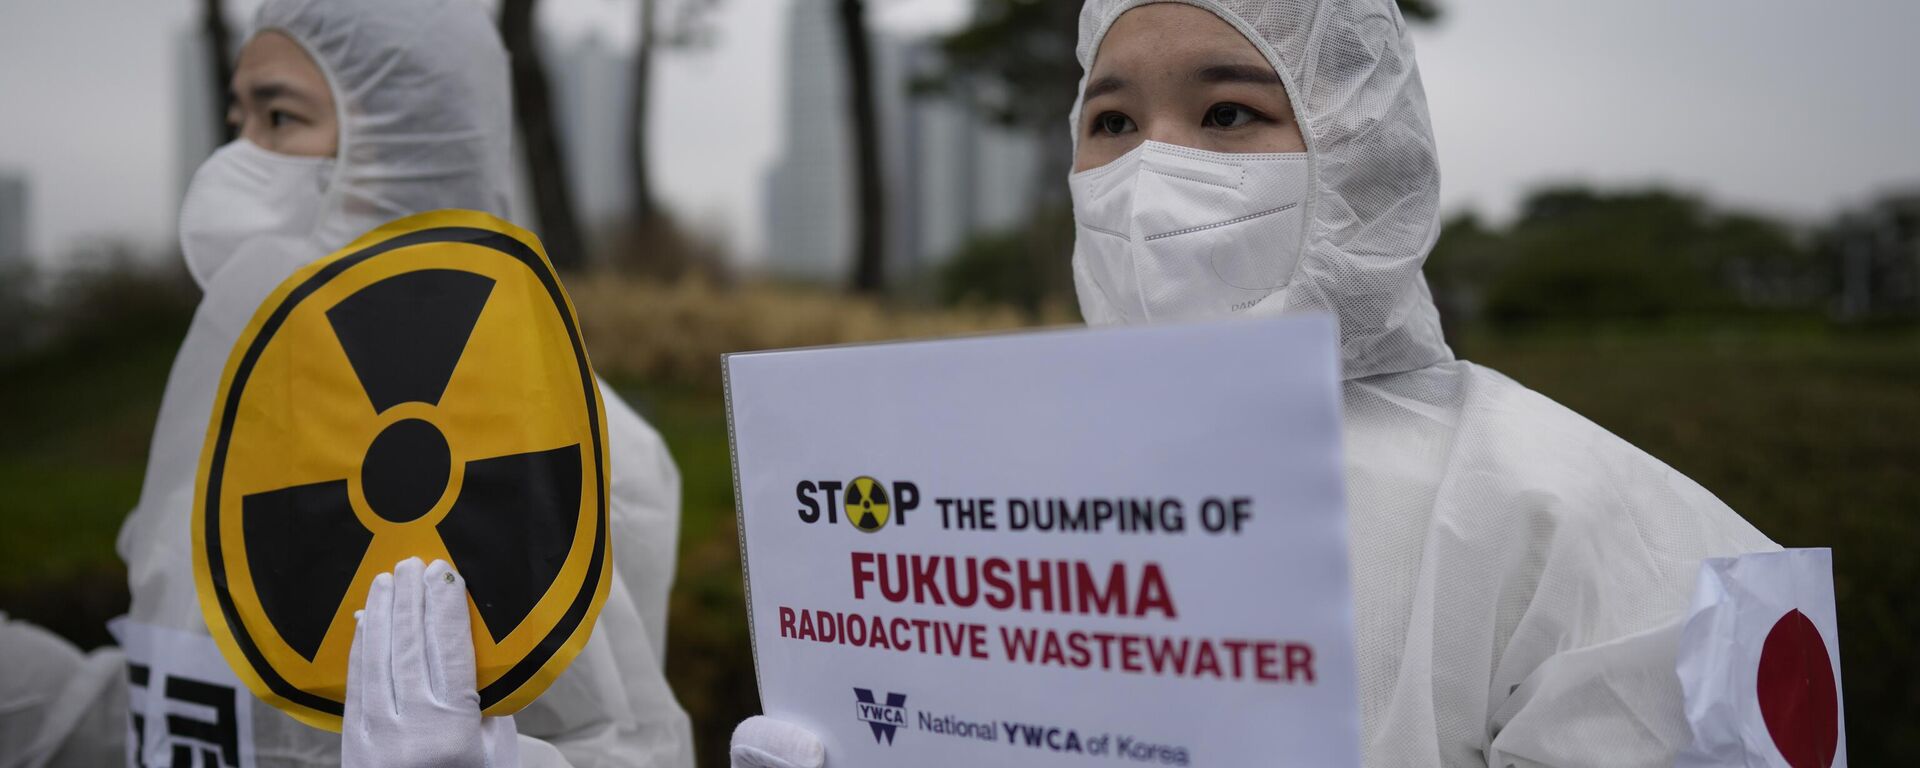 La gente sostiene pancartas durante una manifestación exigiendo la retirada de la decisión del Пobierno japonés de liberar agua radiactiva tratada de Fukushima, en Seúl, Corea del Sur, el 6 de abril de 2023 - Sputnik Mundo, 1920, 24.08.2023